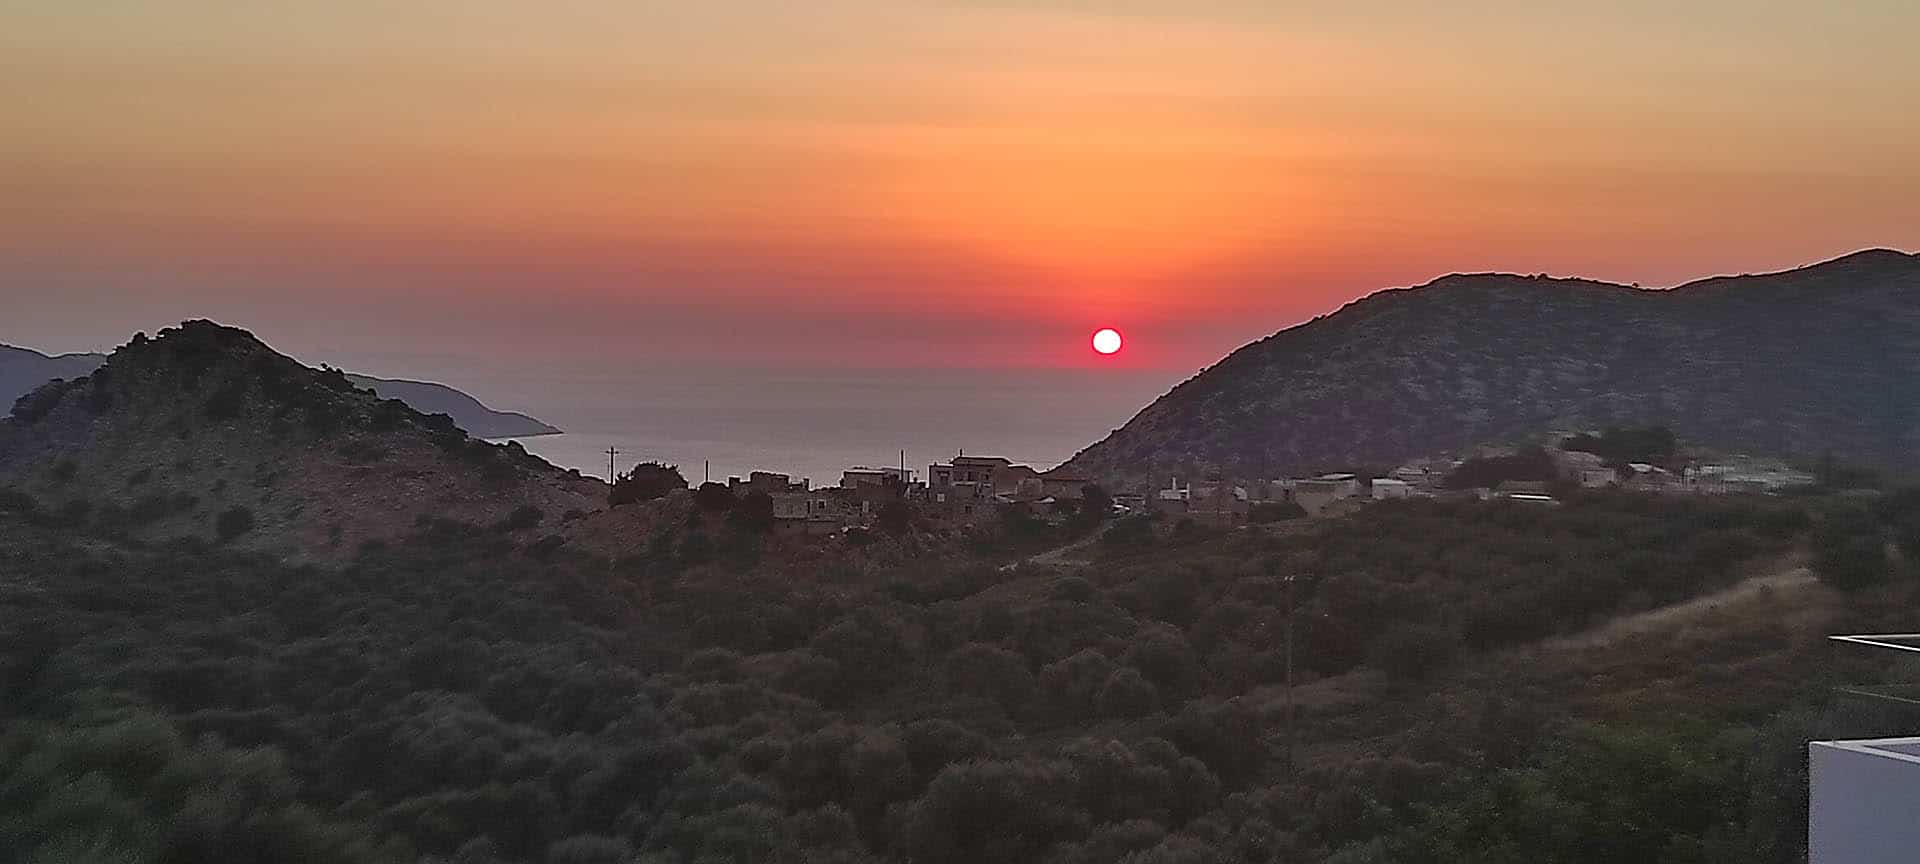 zonsondergang bij het traditionele dorp Achlada op Kreta Griekenland